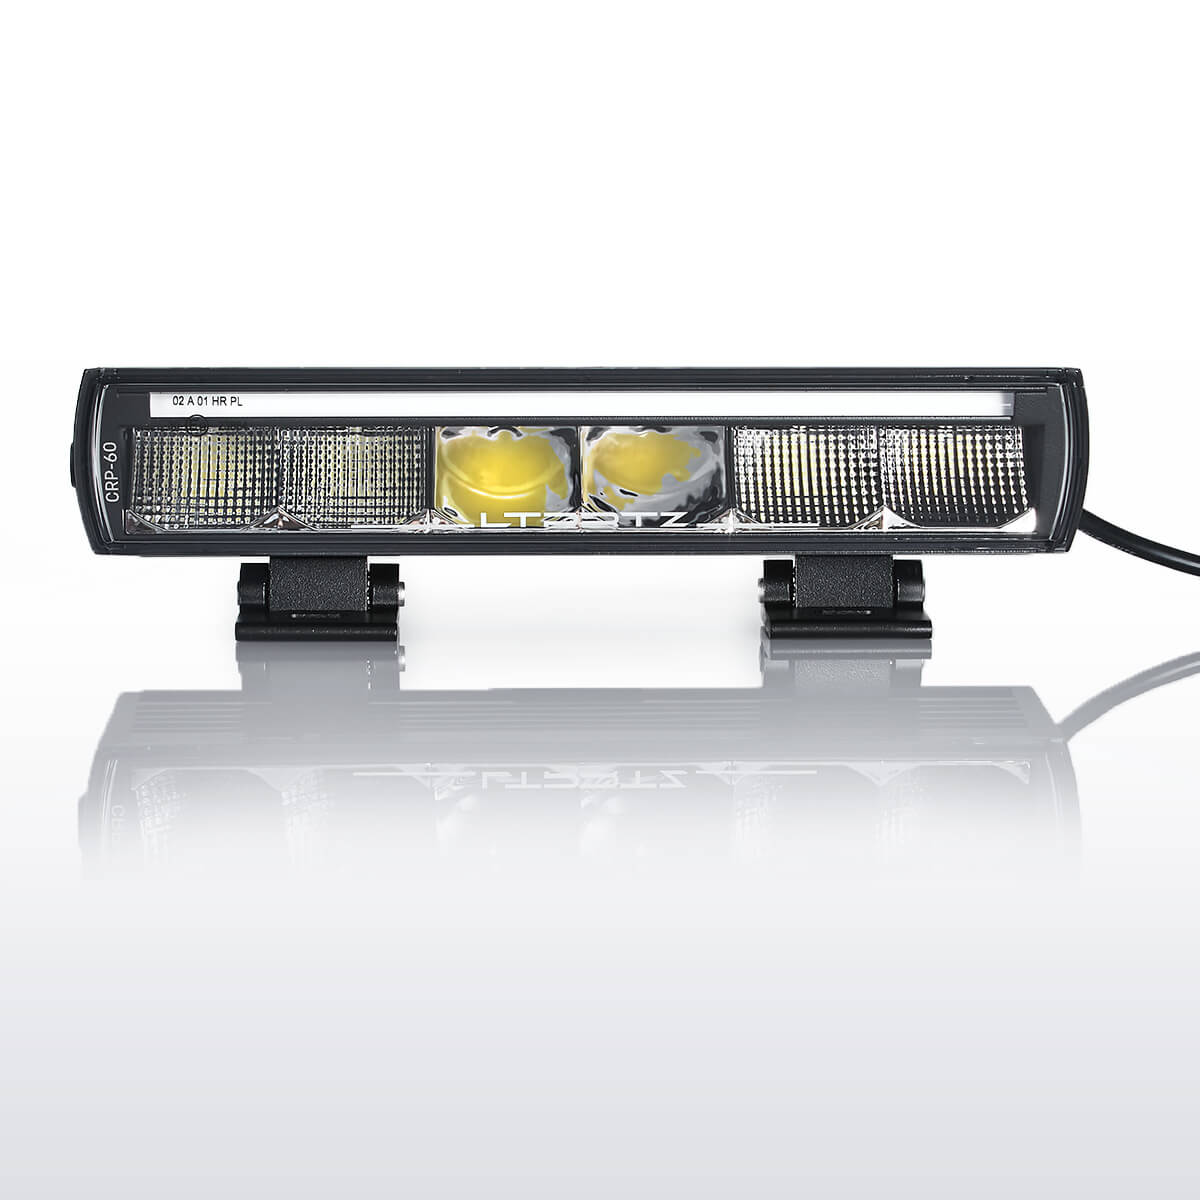 13" LED Lightbar Fernscheinwerfer 30° mit Positionslicht ECE - LTPRTZ®